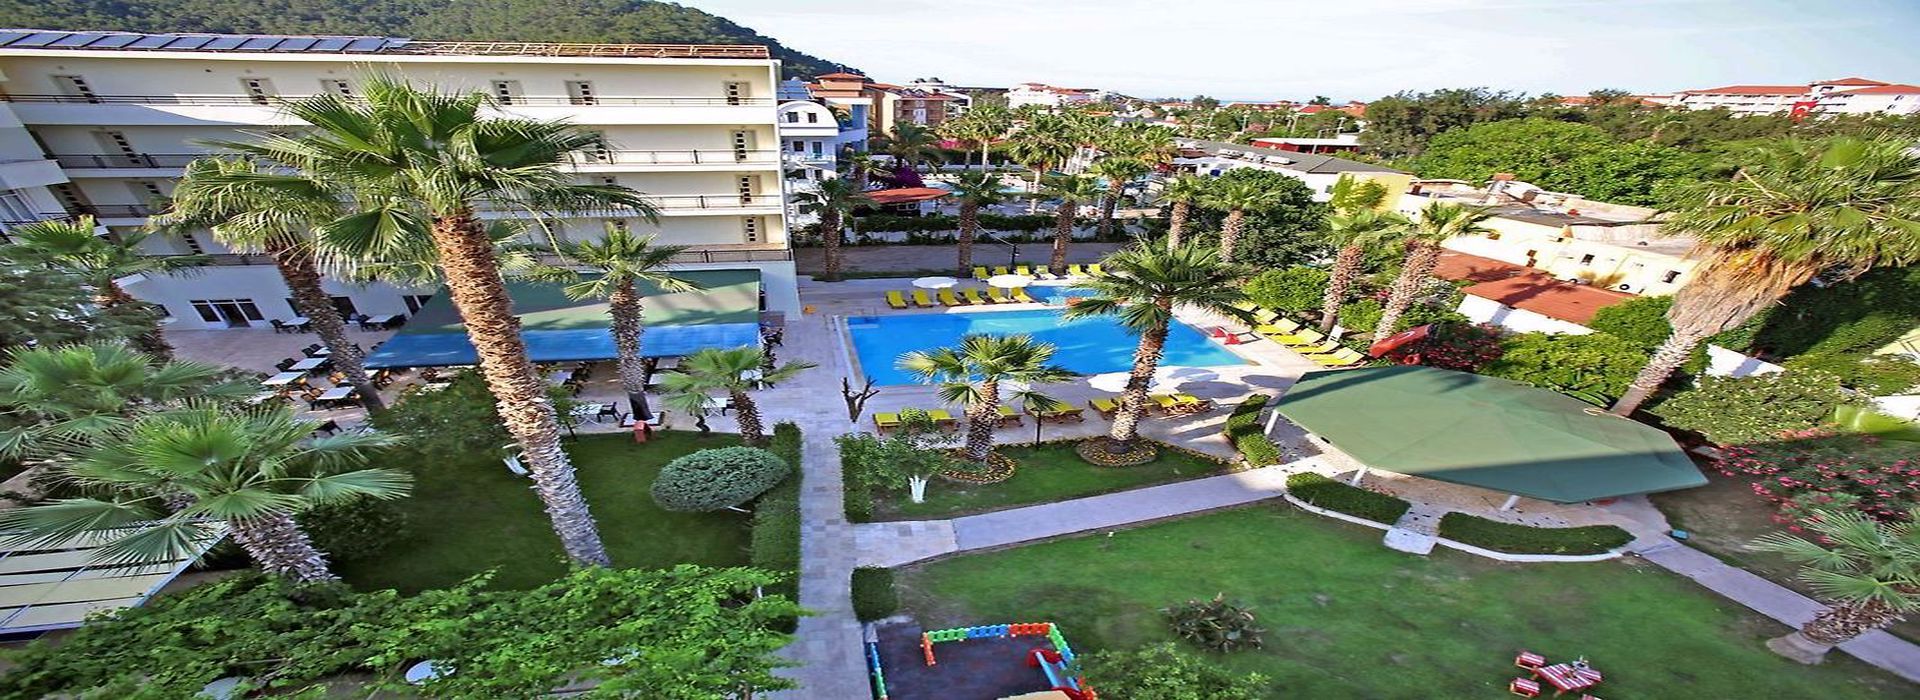 Malibu Resort Hotel Antalya 3